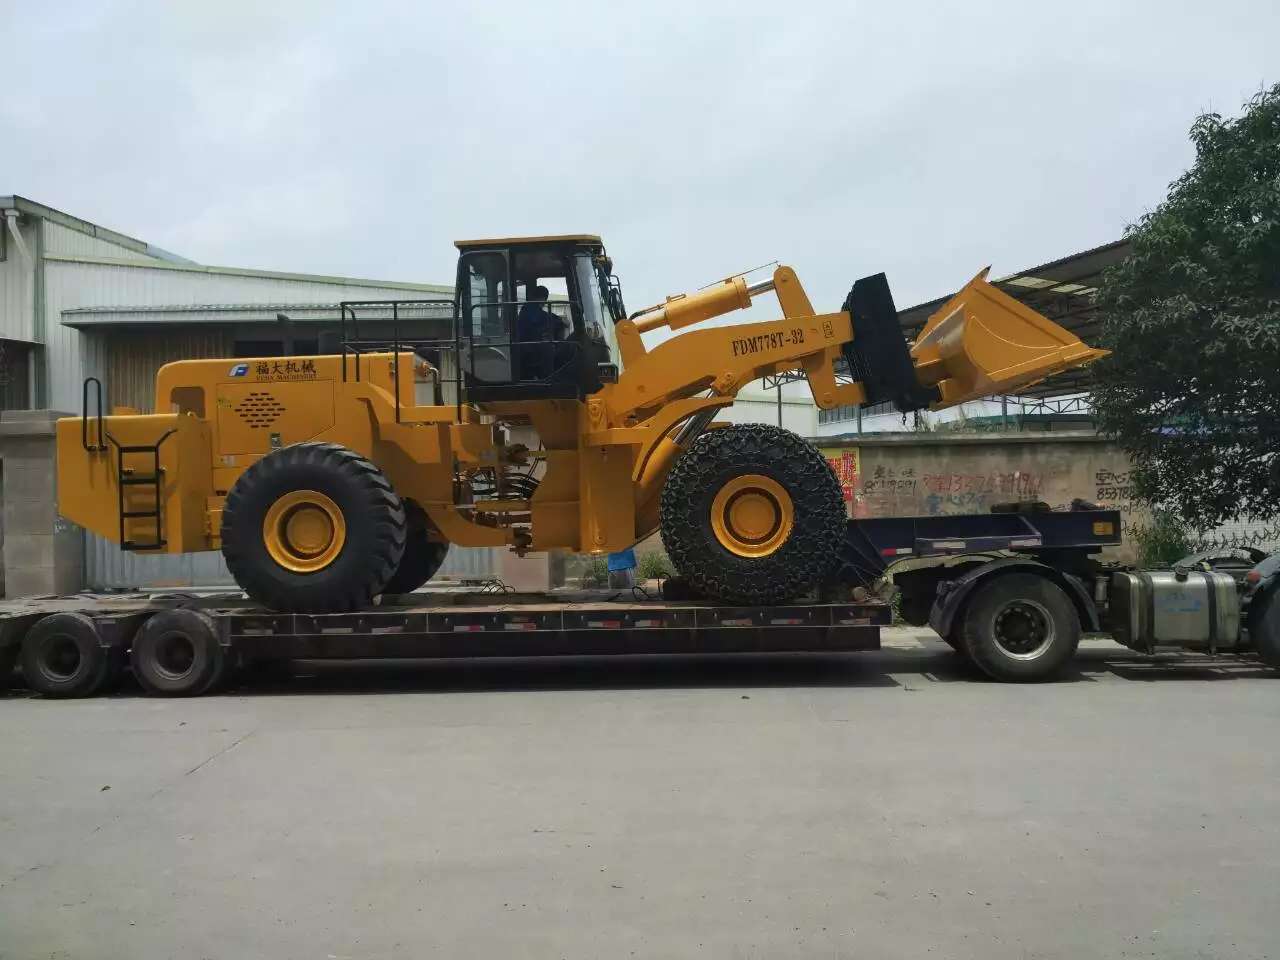 32t forklift loader sent to yunnan, china